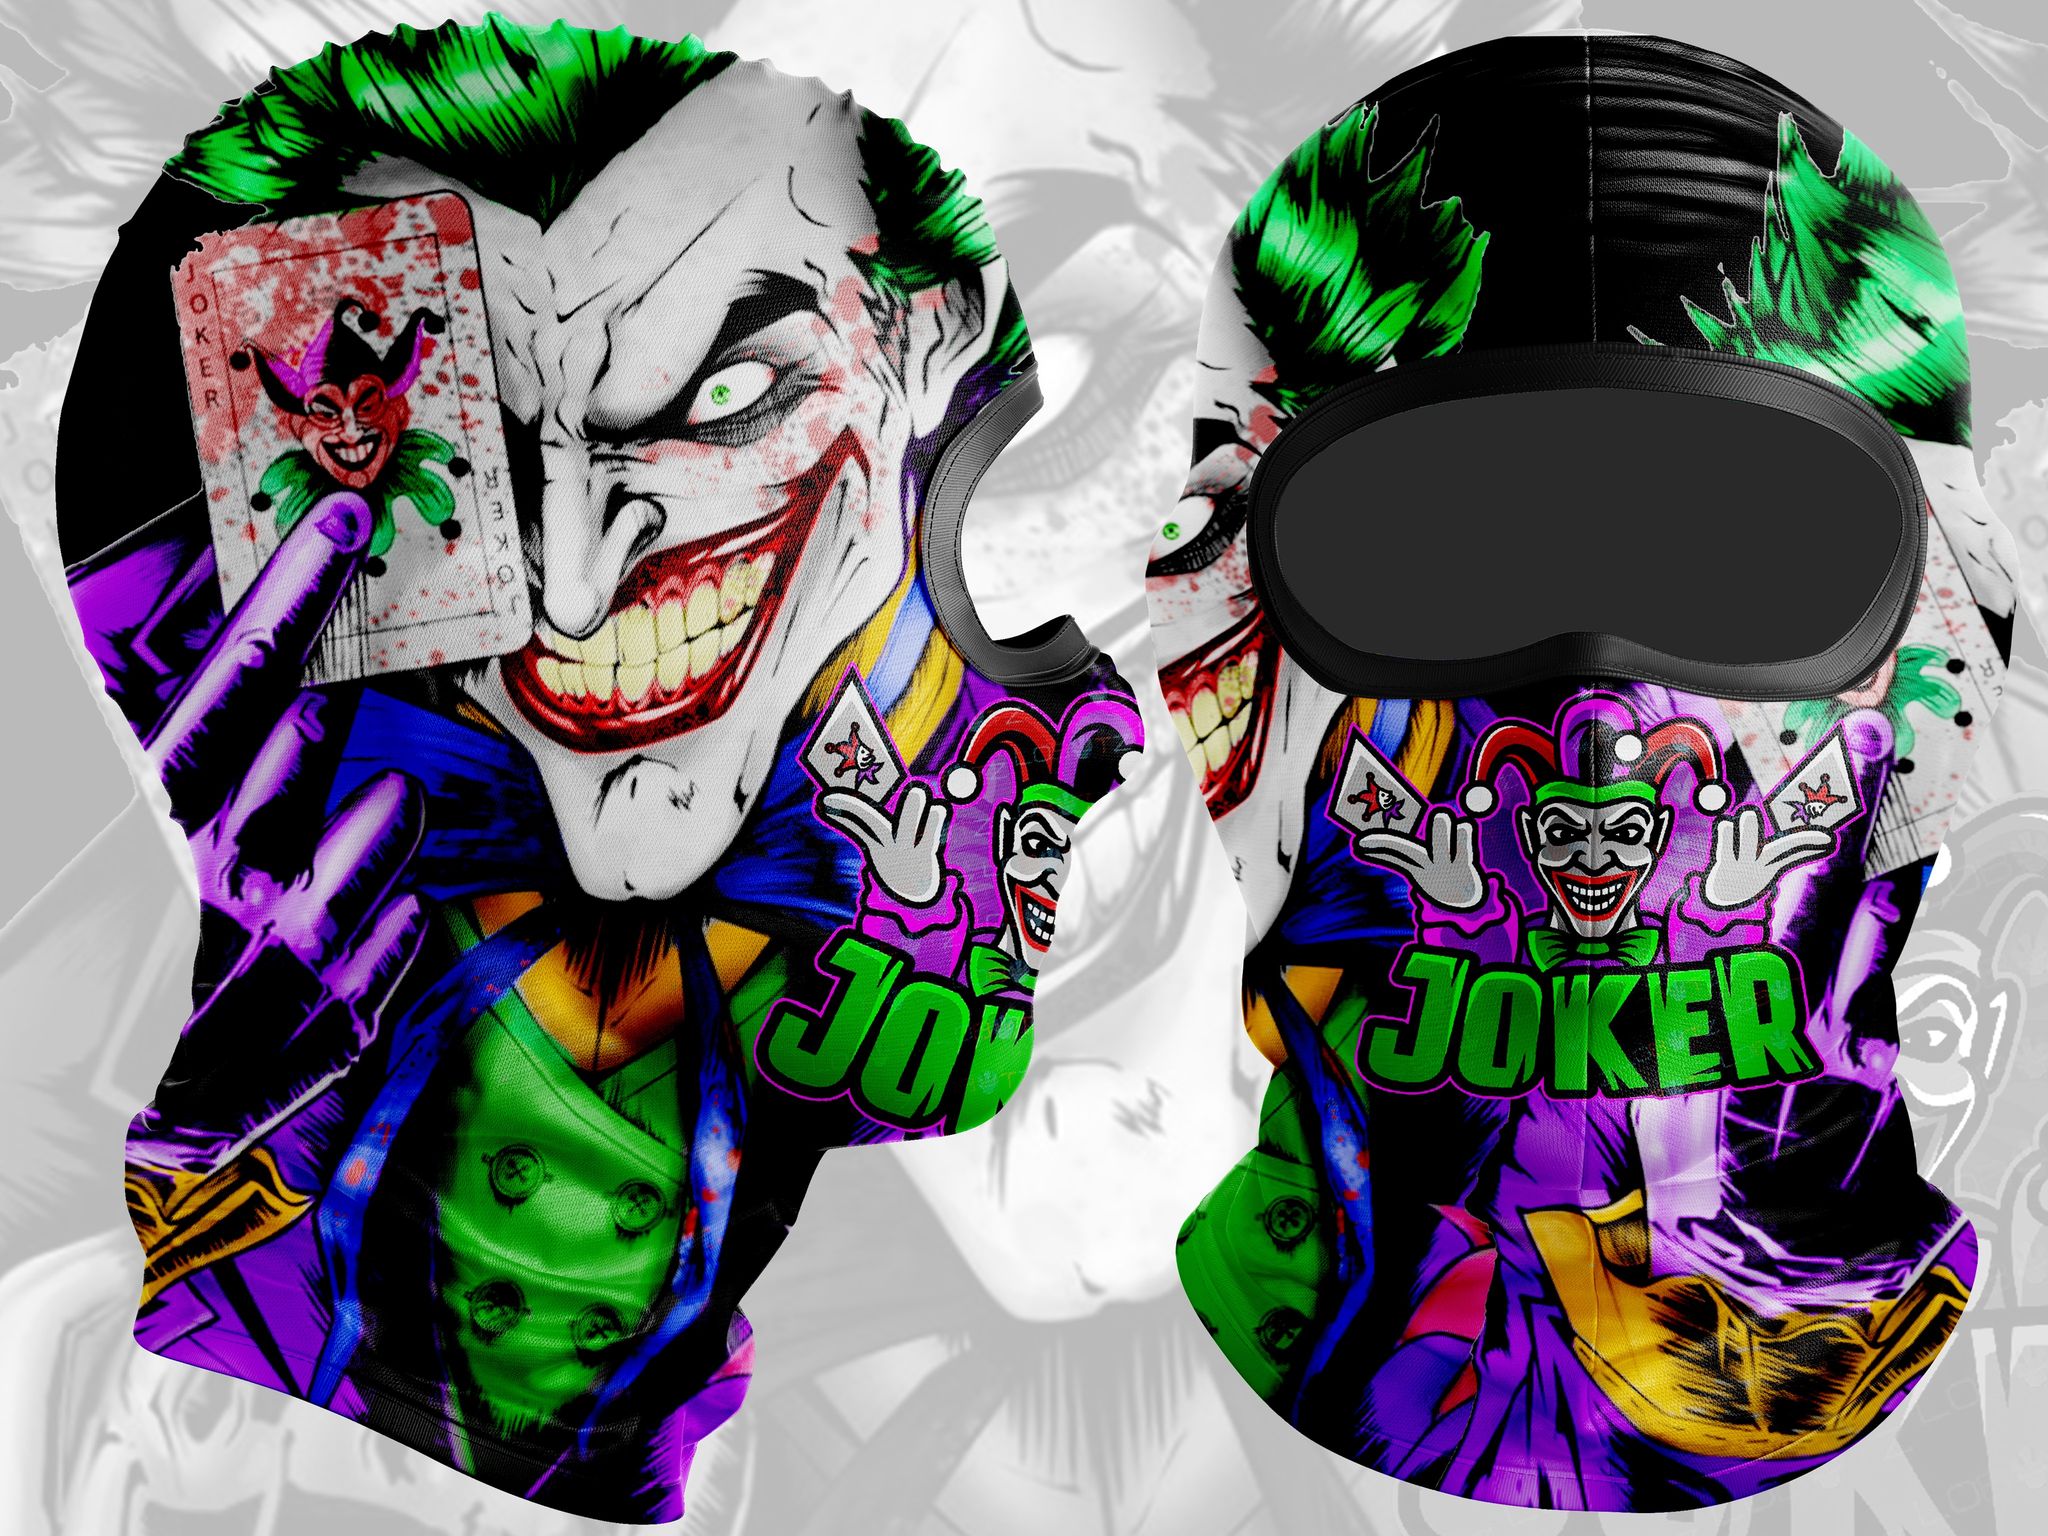 Joker ganas